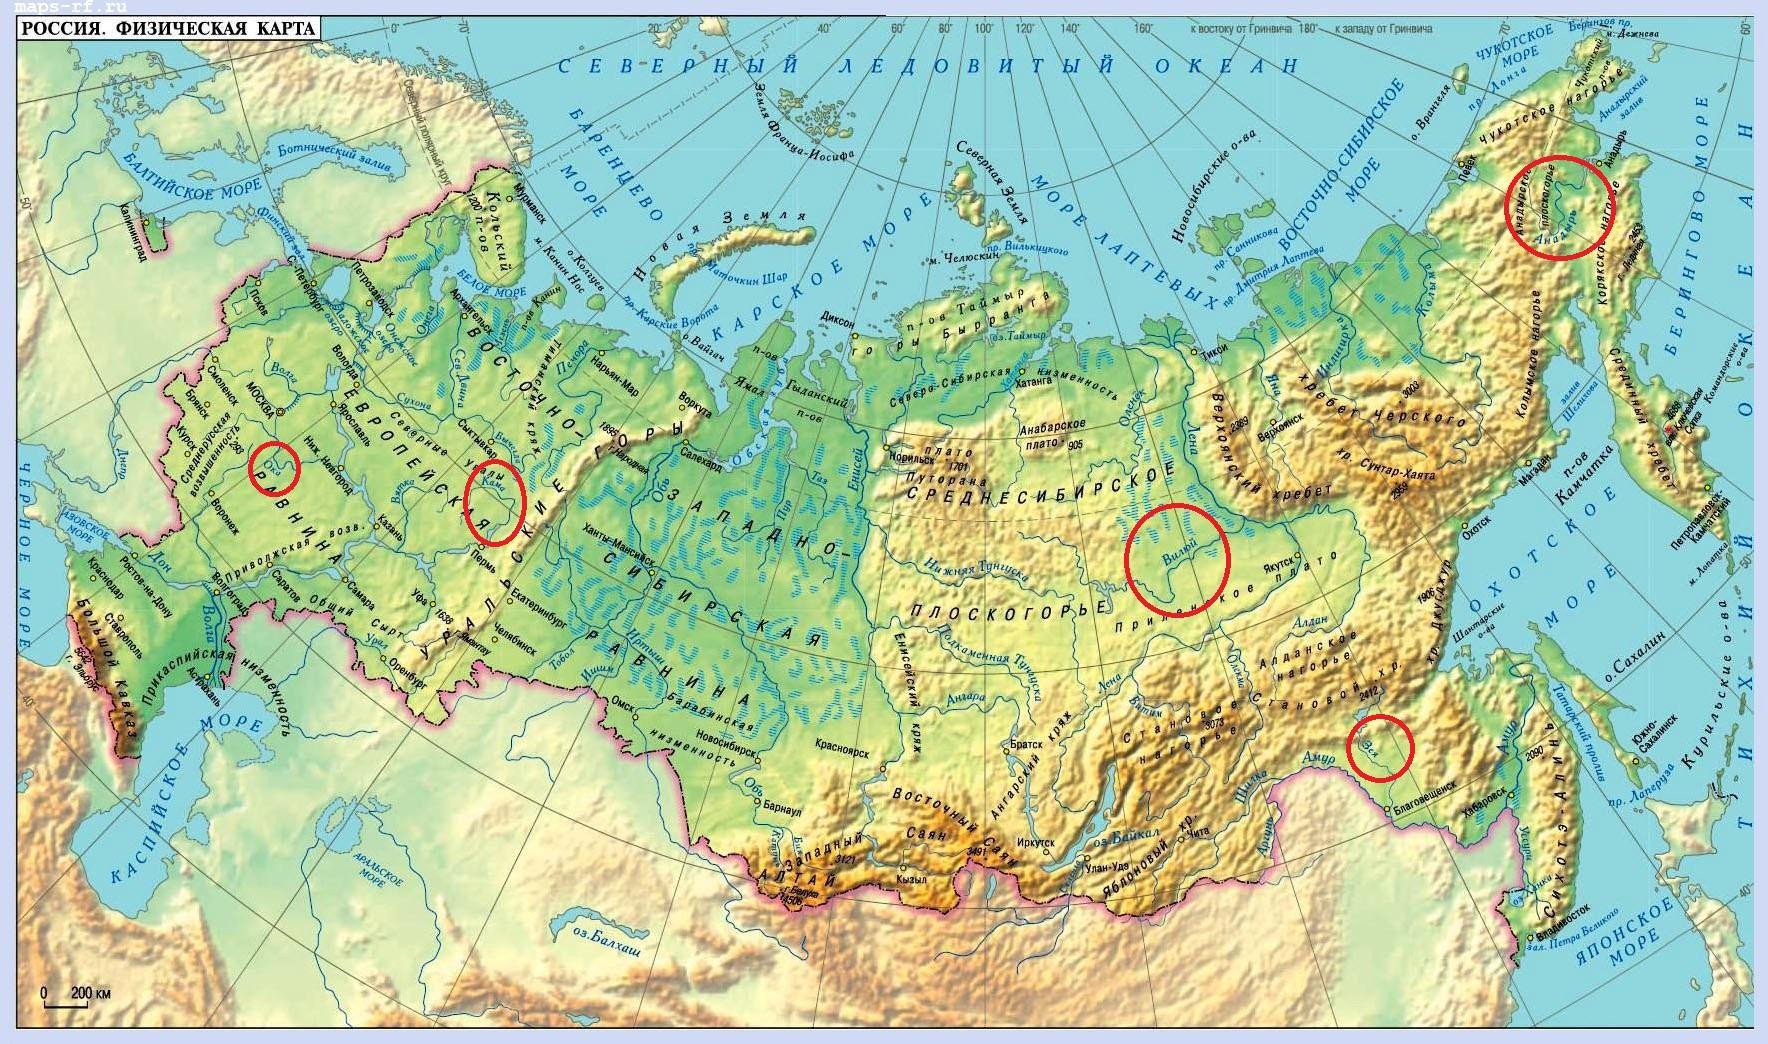 Какая из перечисленных горных систем расположена в области Герцинской?